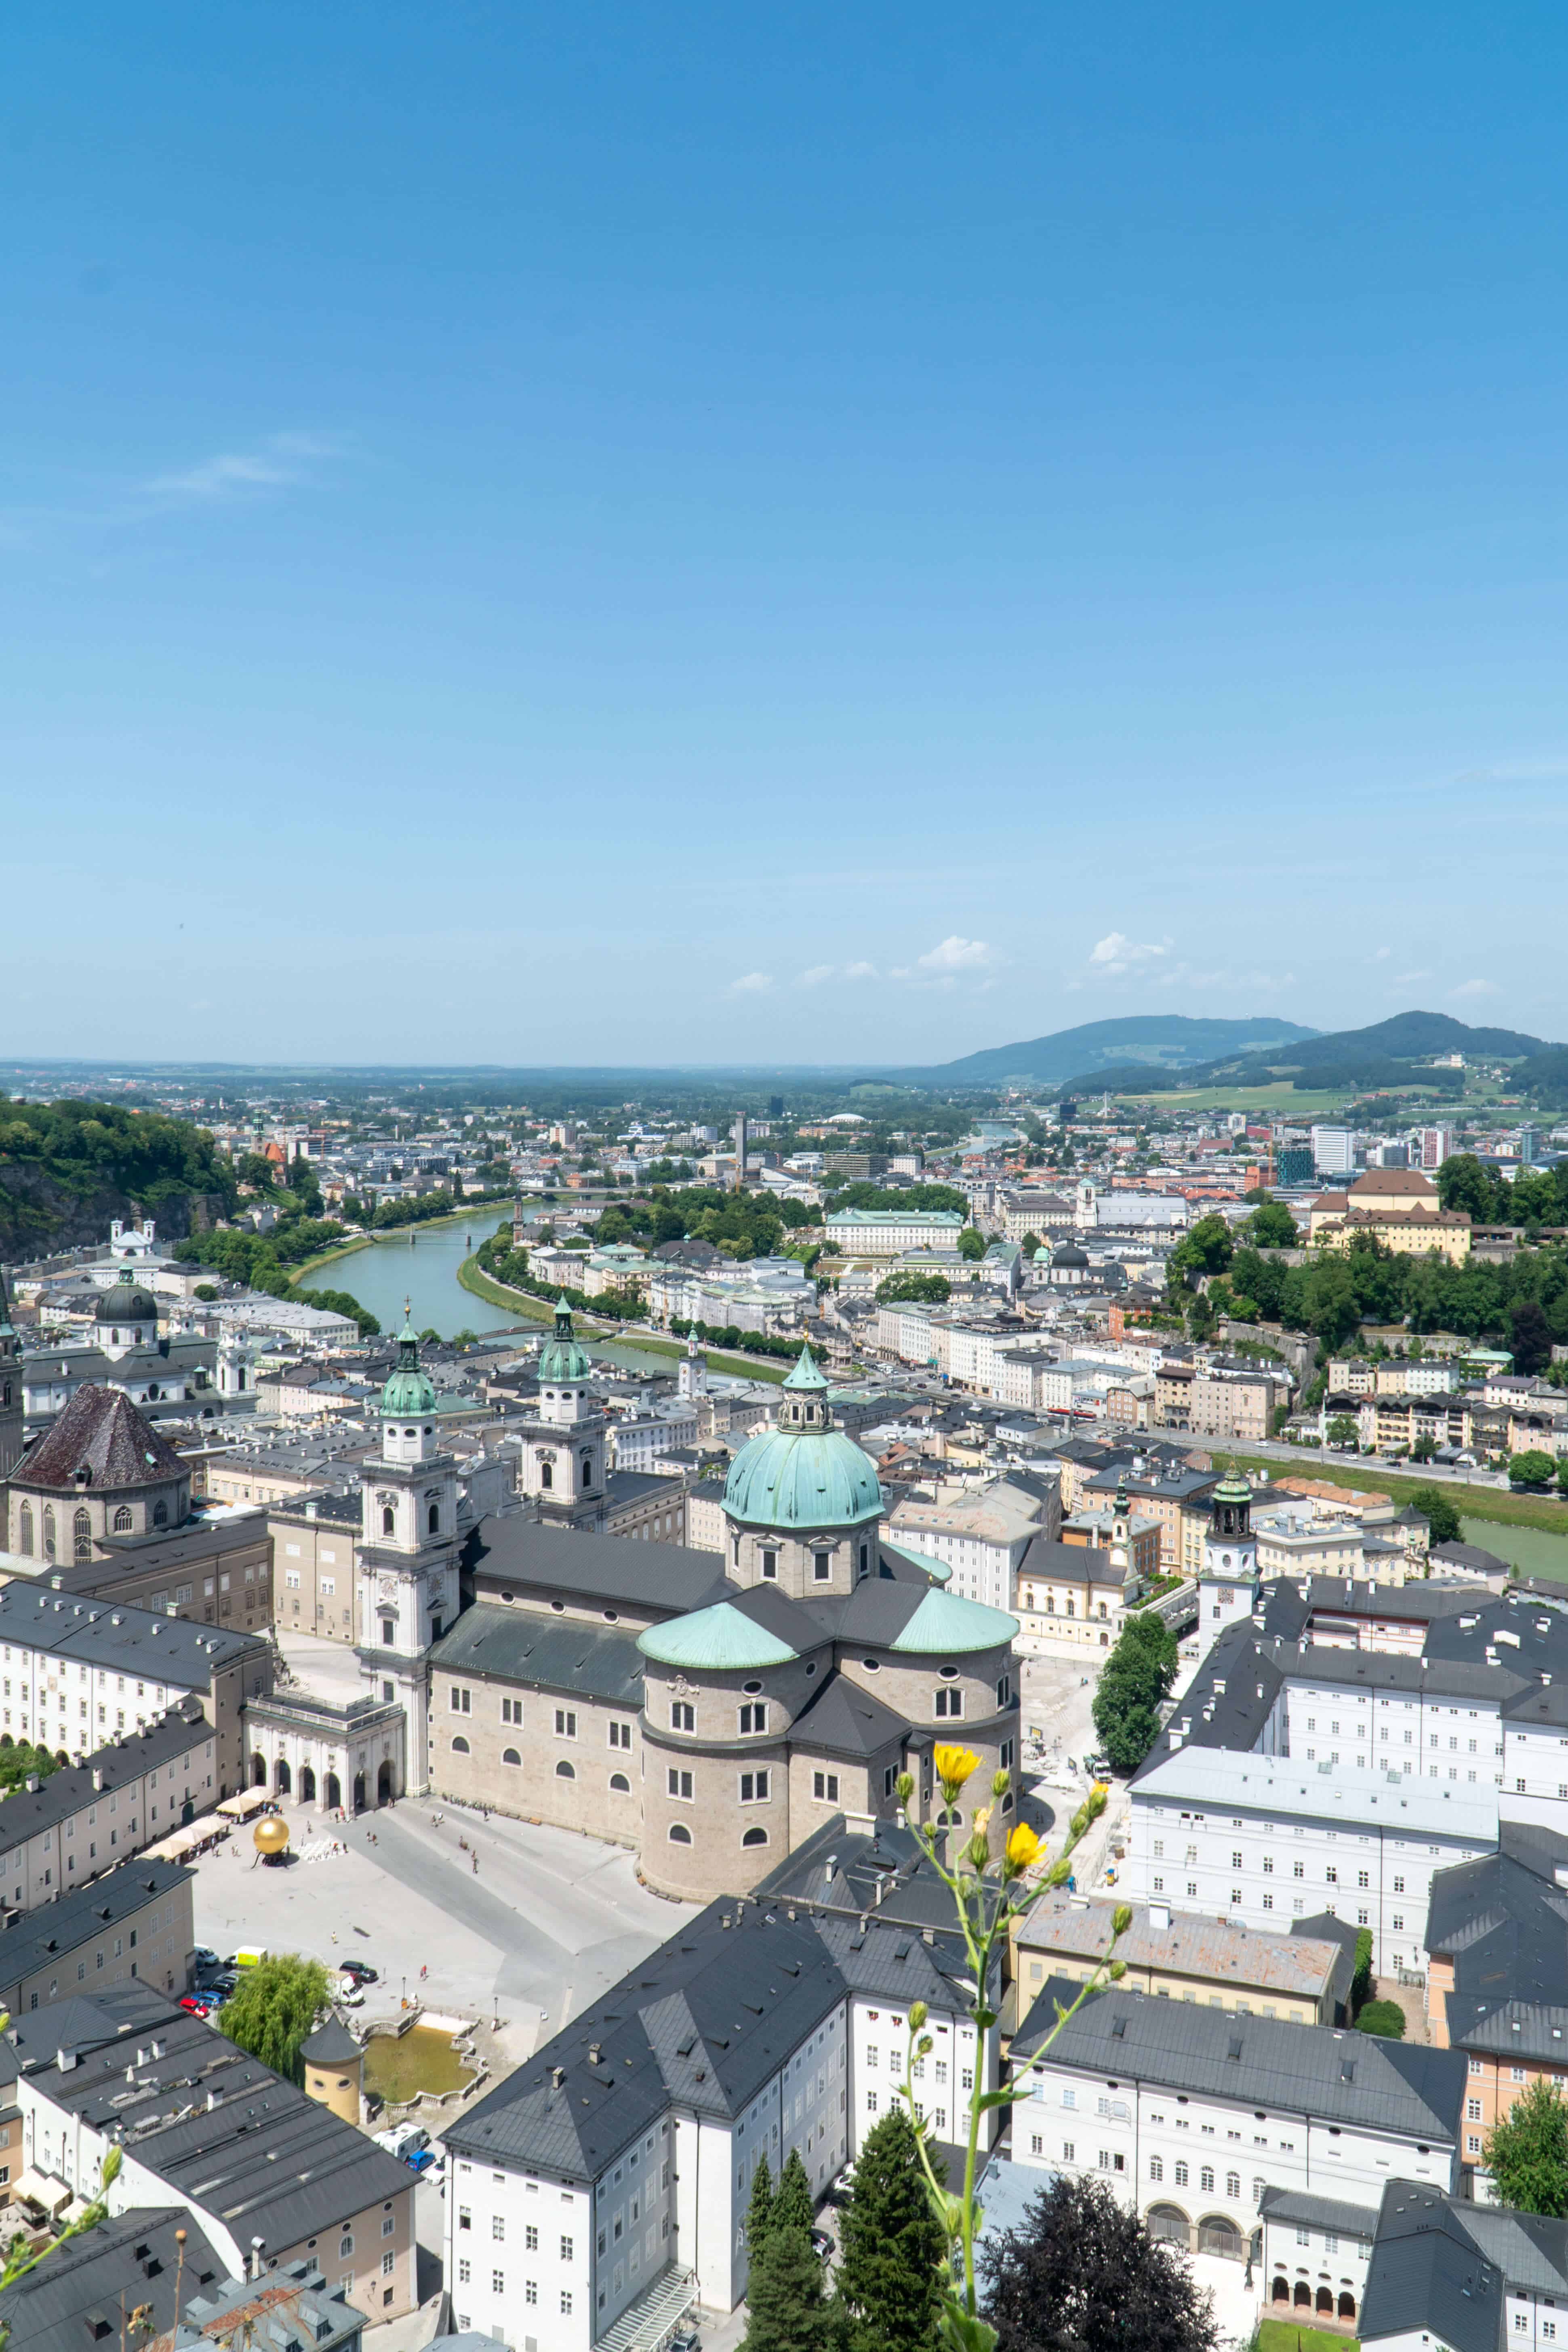 Staying at Hotel Schloss Mönchstein in Salzburg Austria | Salzburg Views | The Republic of Rose | #Salzburg #Austria #Europe #Travel #SoundofMusic